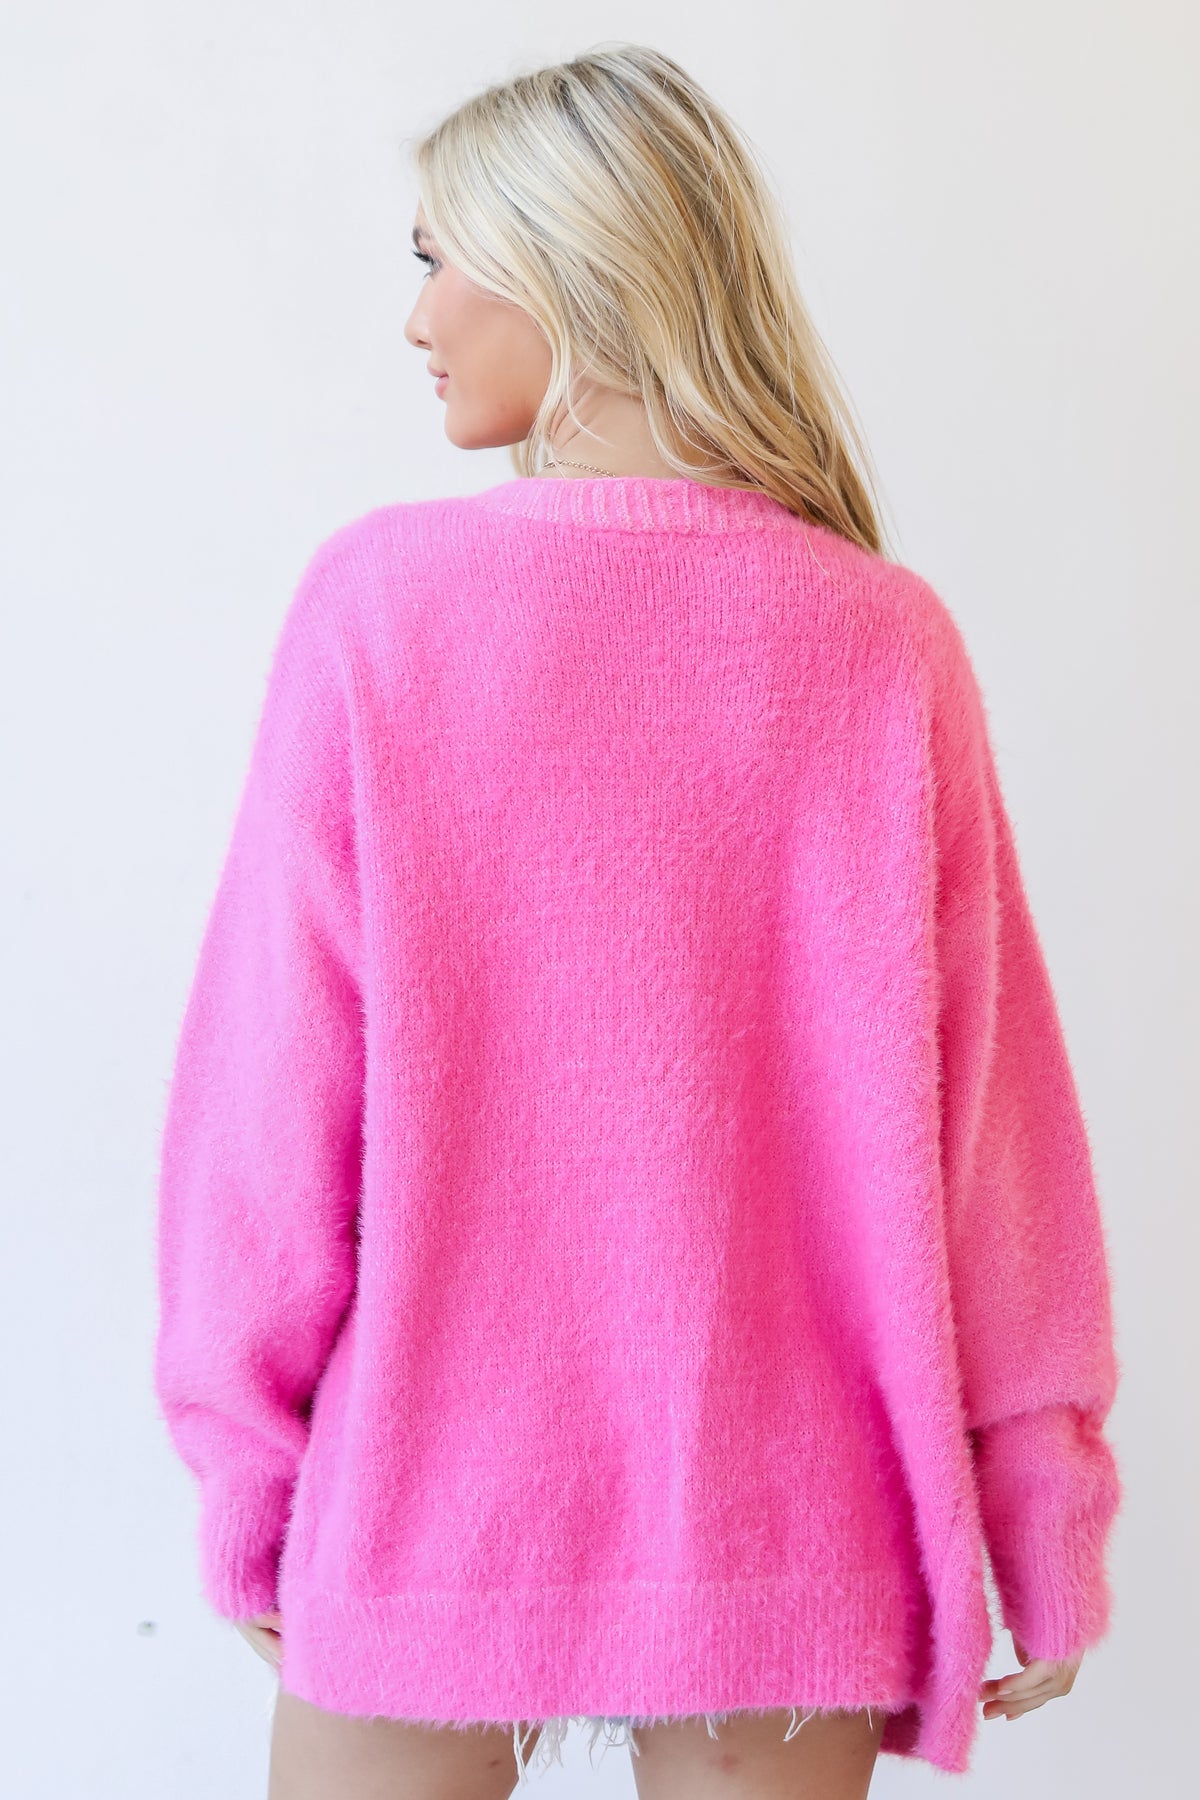 Hot Pink Eyelash Knit Sweater Cardigan